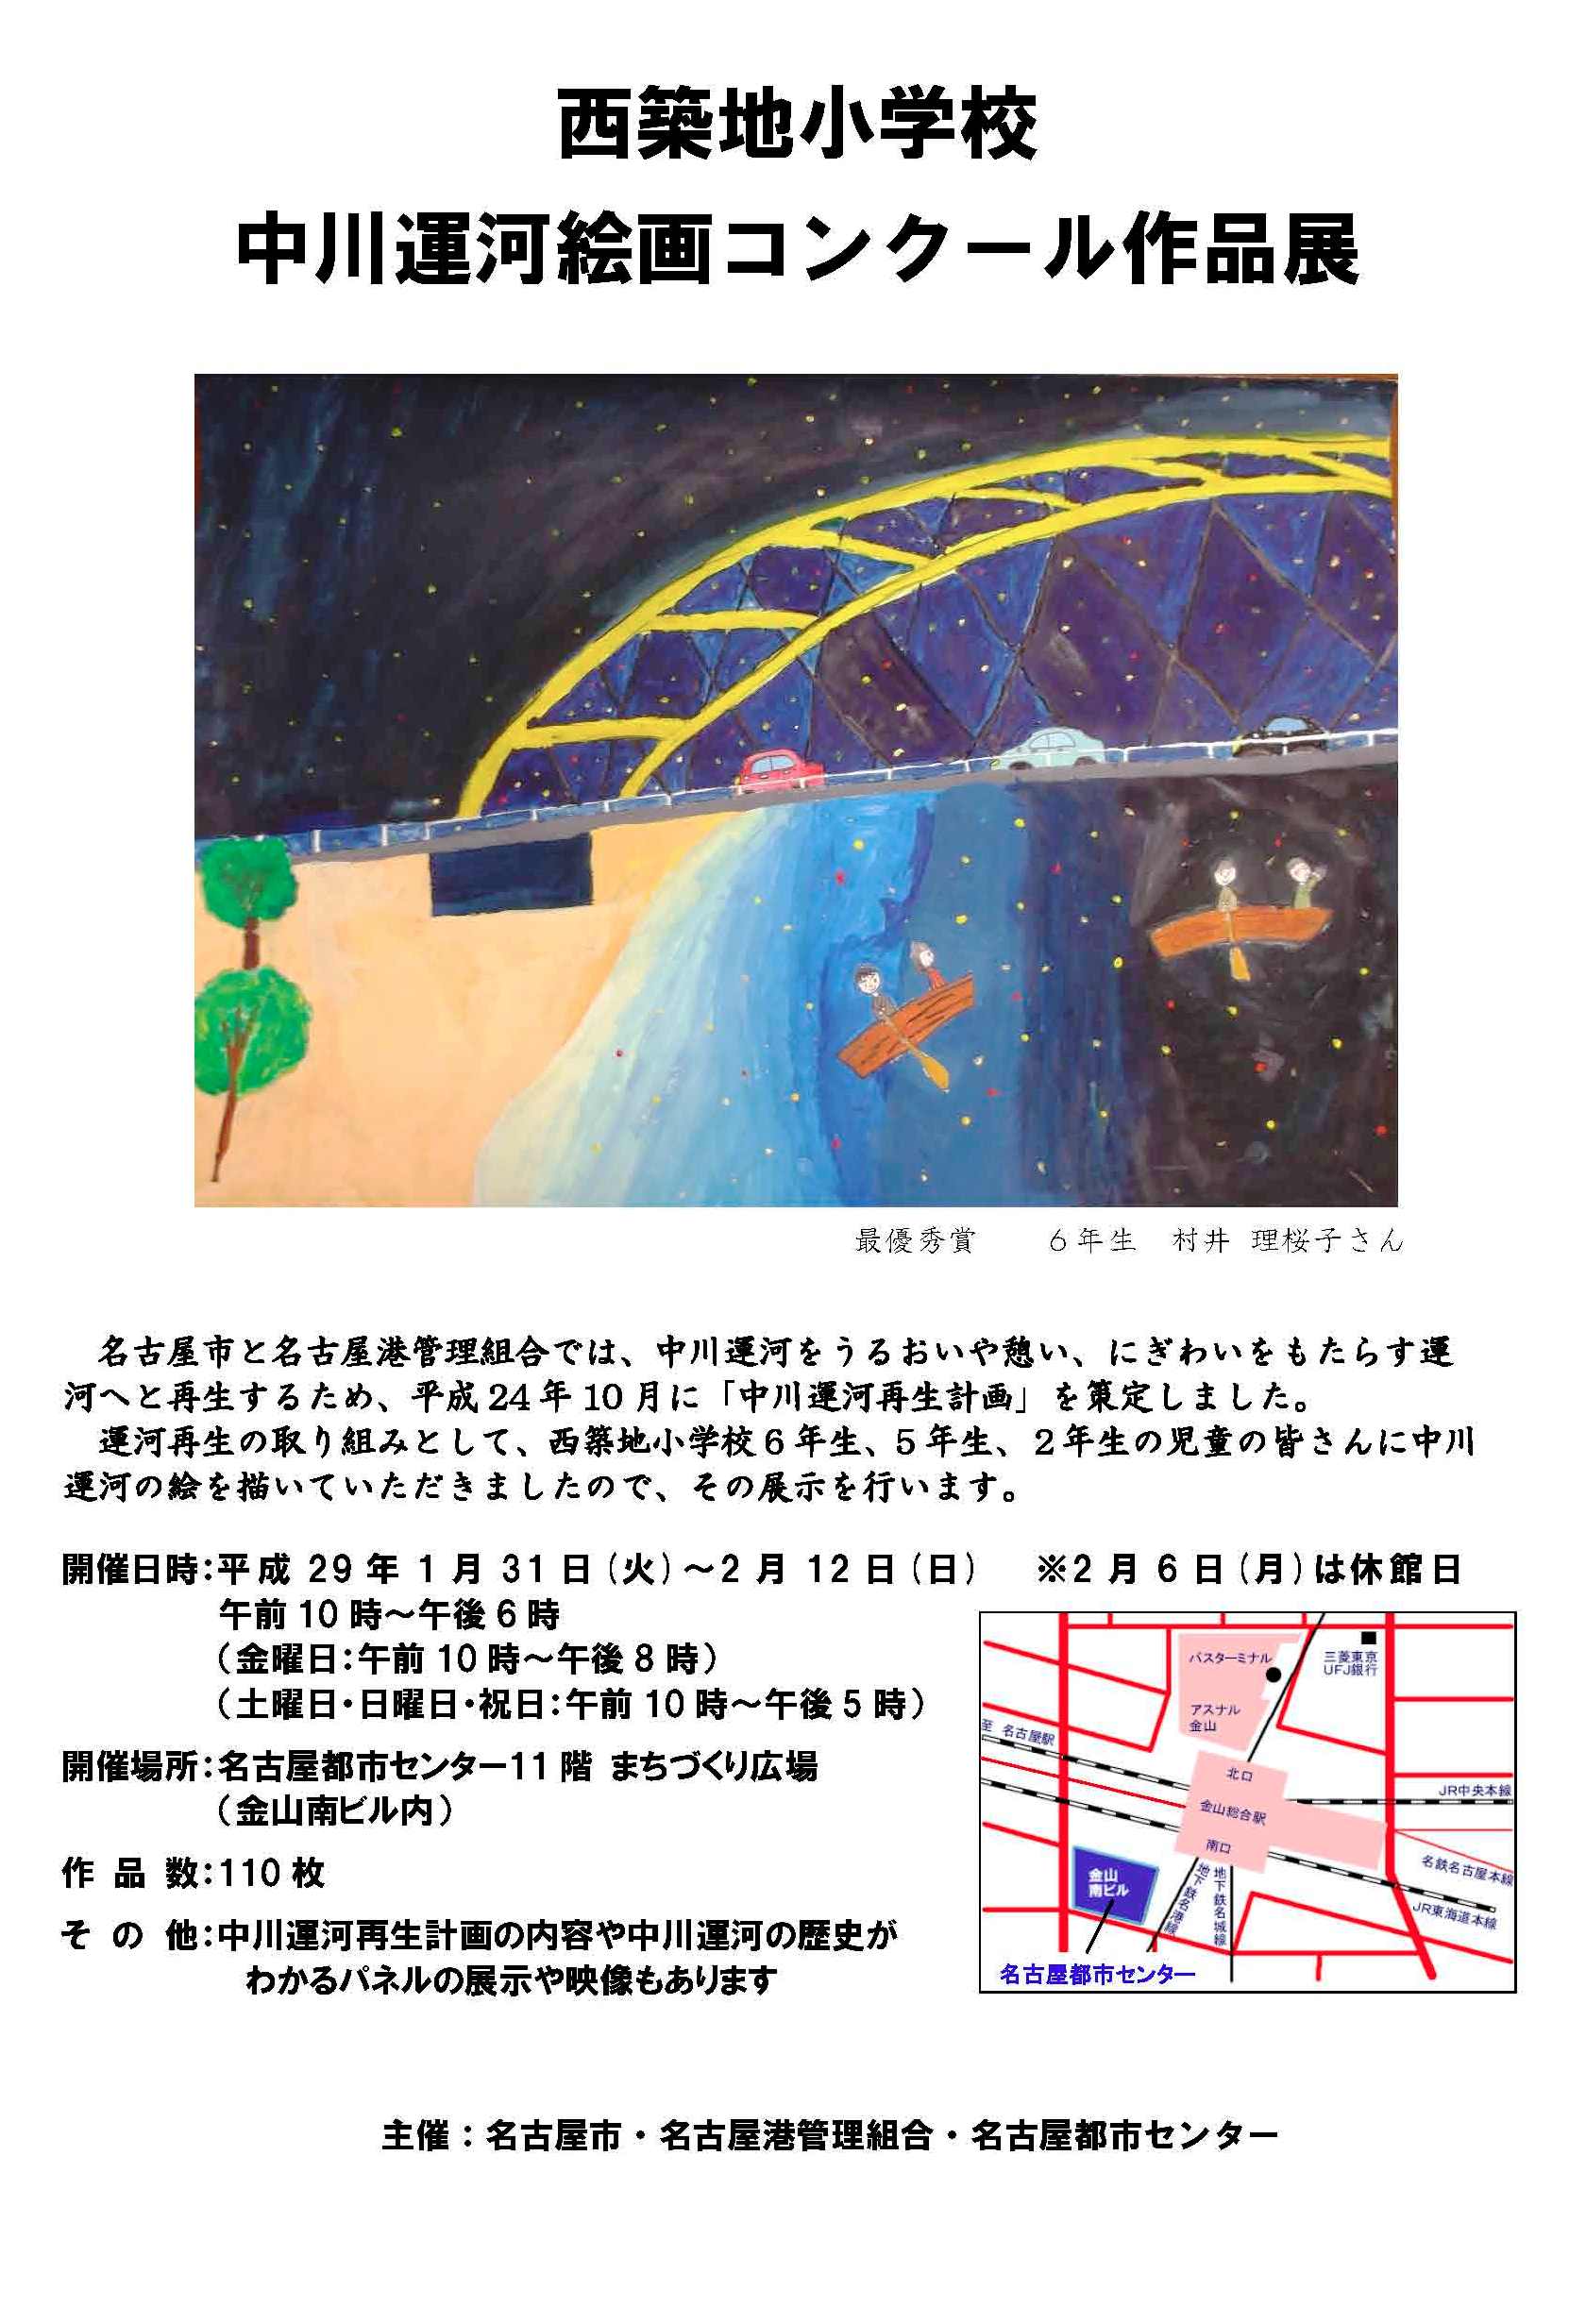 西築地小学校 中川運河絵画コンクール作品展